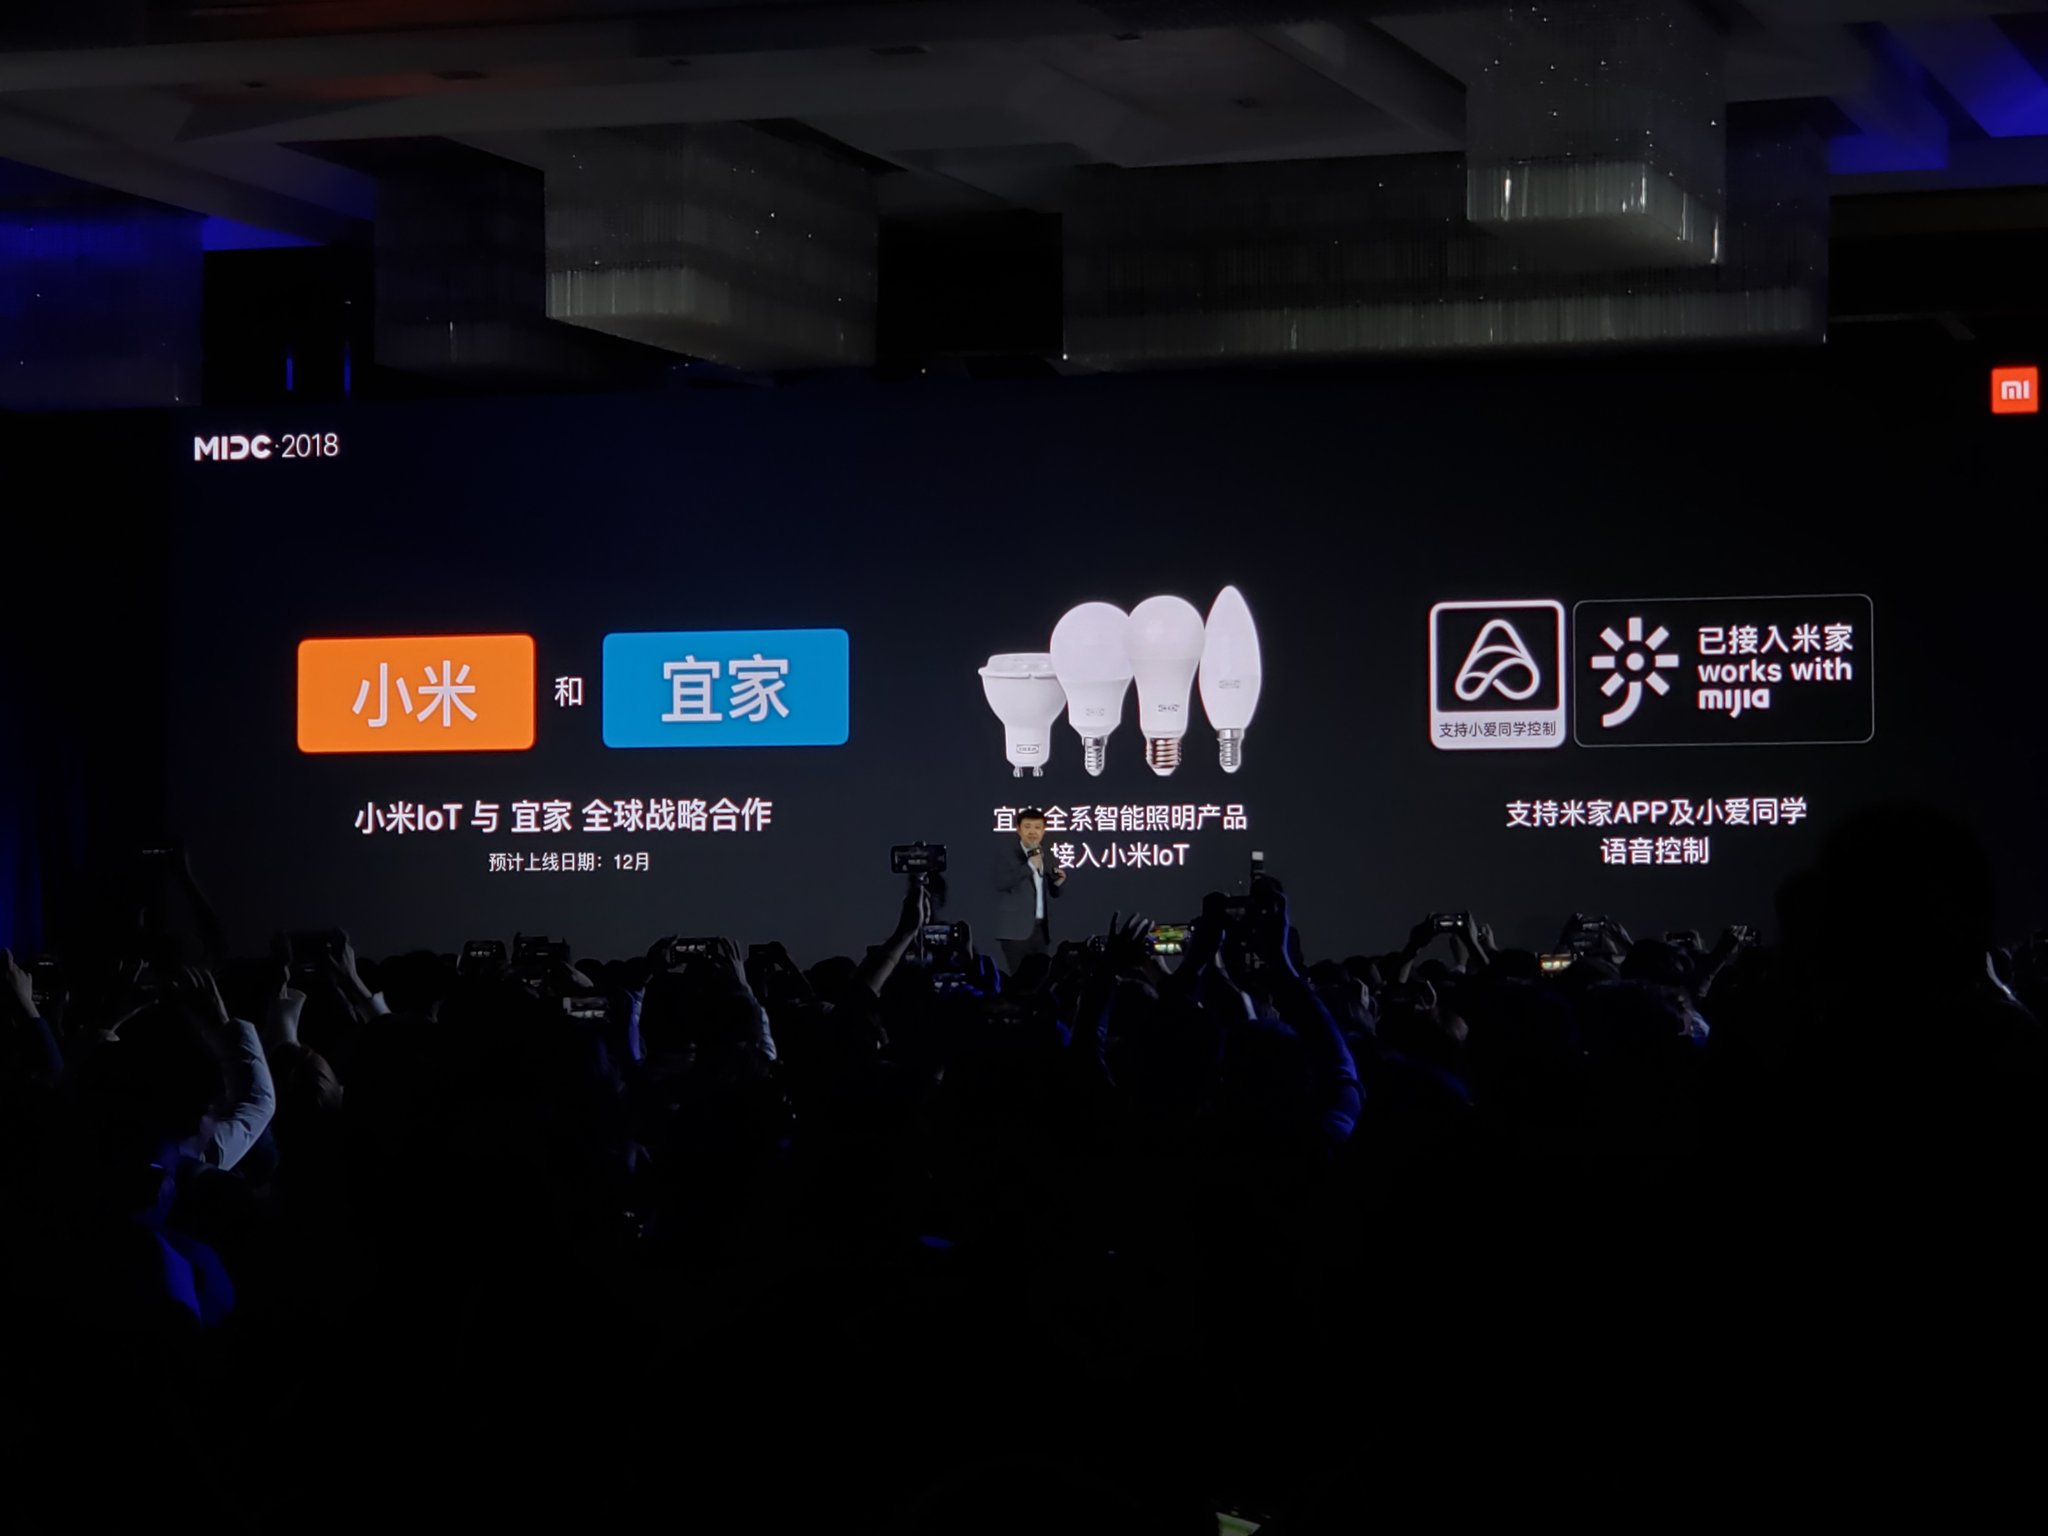 Xiaomi ve IKEA ortaklığı detaylandı